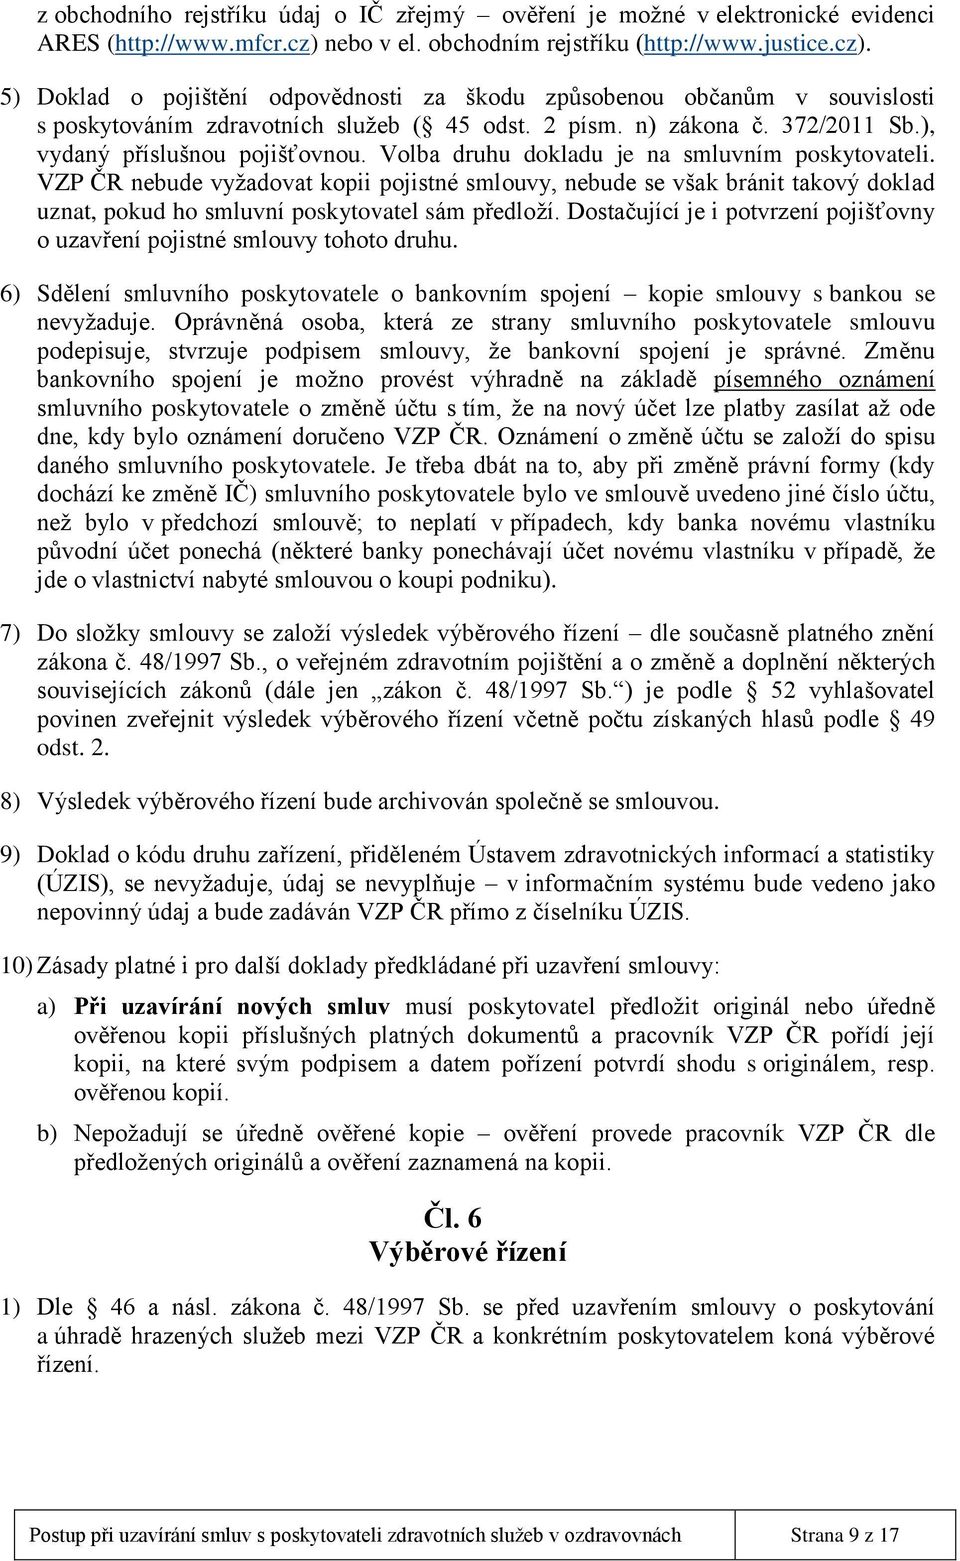 372/2011 Sb.), vydaný příslušnou pojišťovnou. Volba druhu dokladu je na smluvním poskytovateli.